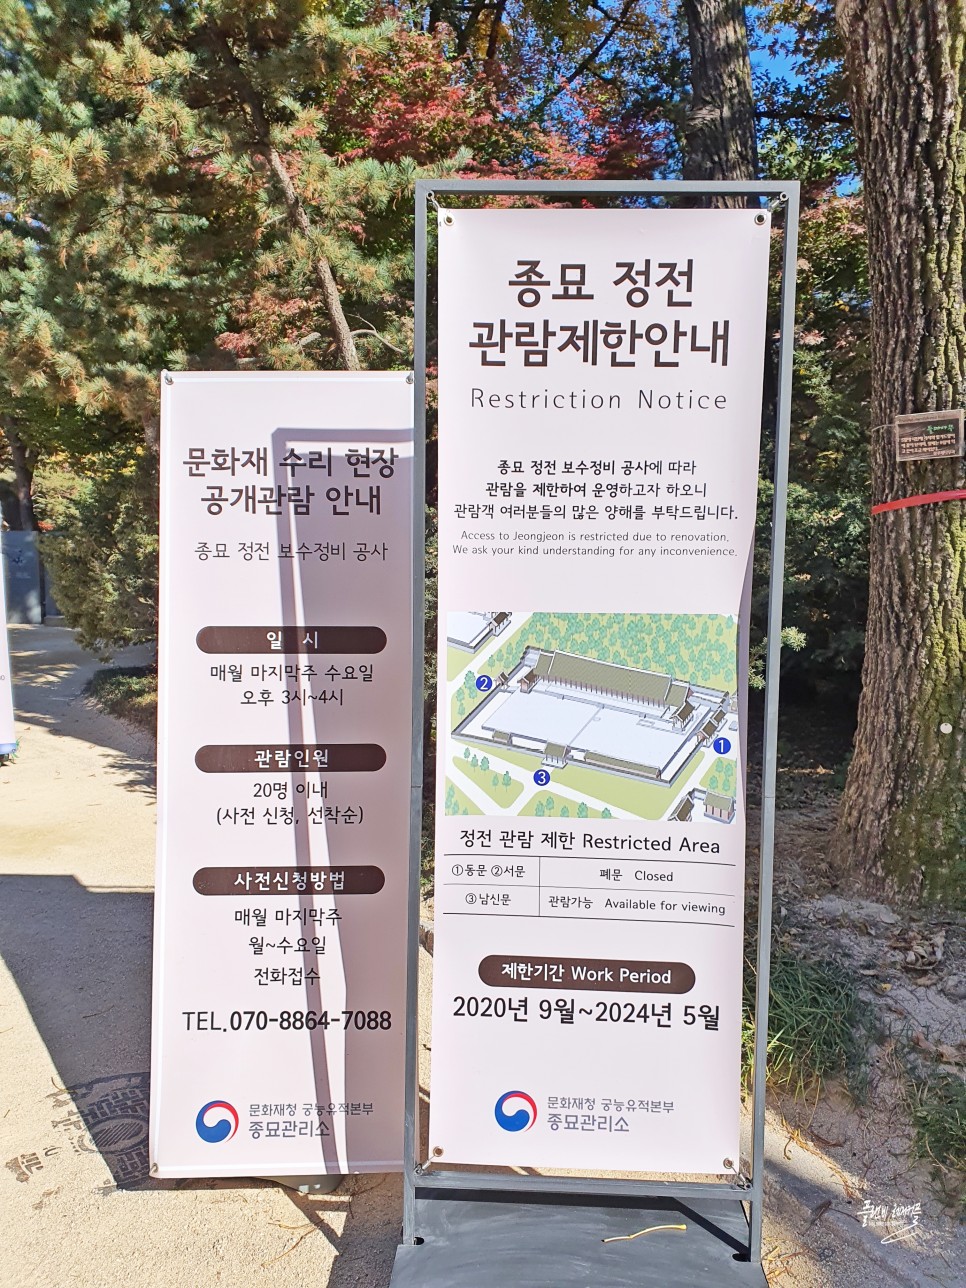 서울 단풍 명소 종묘 운현궁 가을 데이트 가볼만한곳